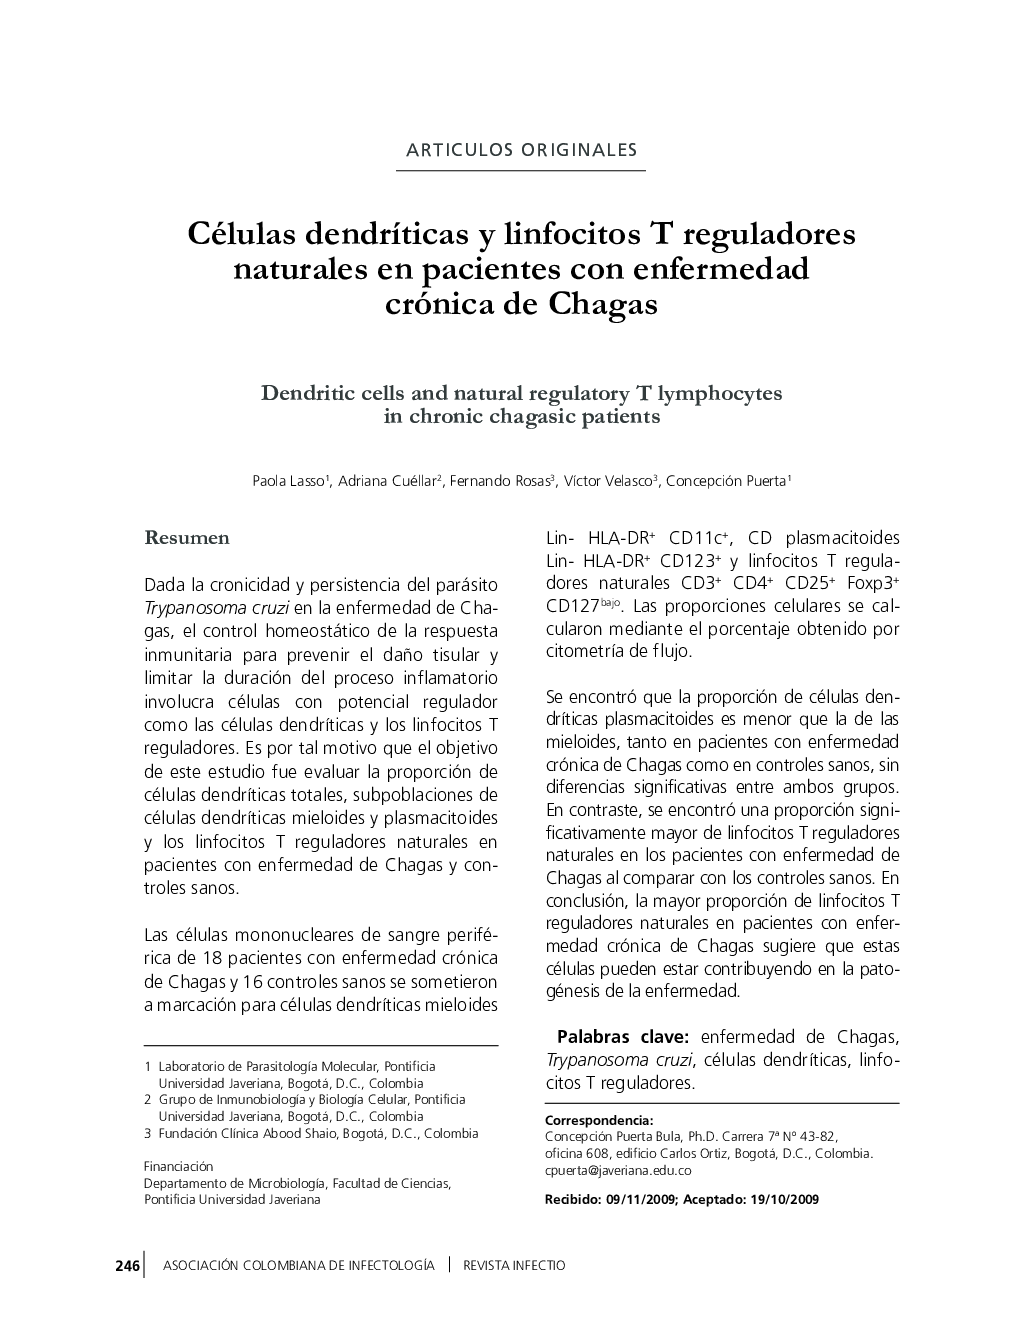 Células dendríticas y linfocitos T reguladores naturales en pacientes con enfermedad crónica de Chagas